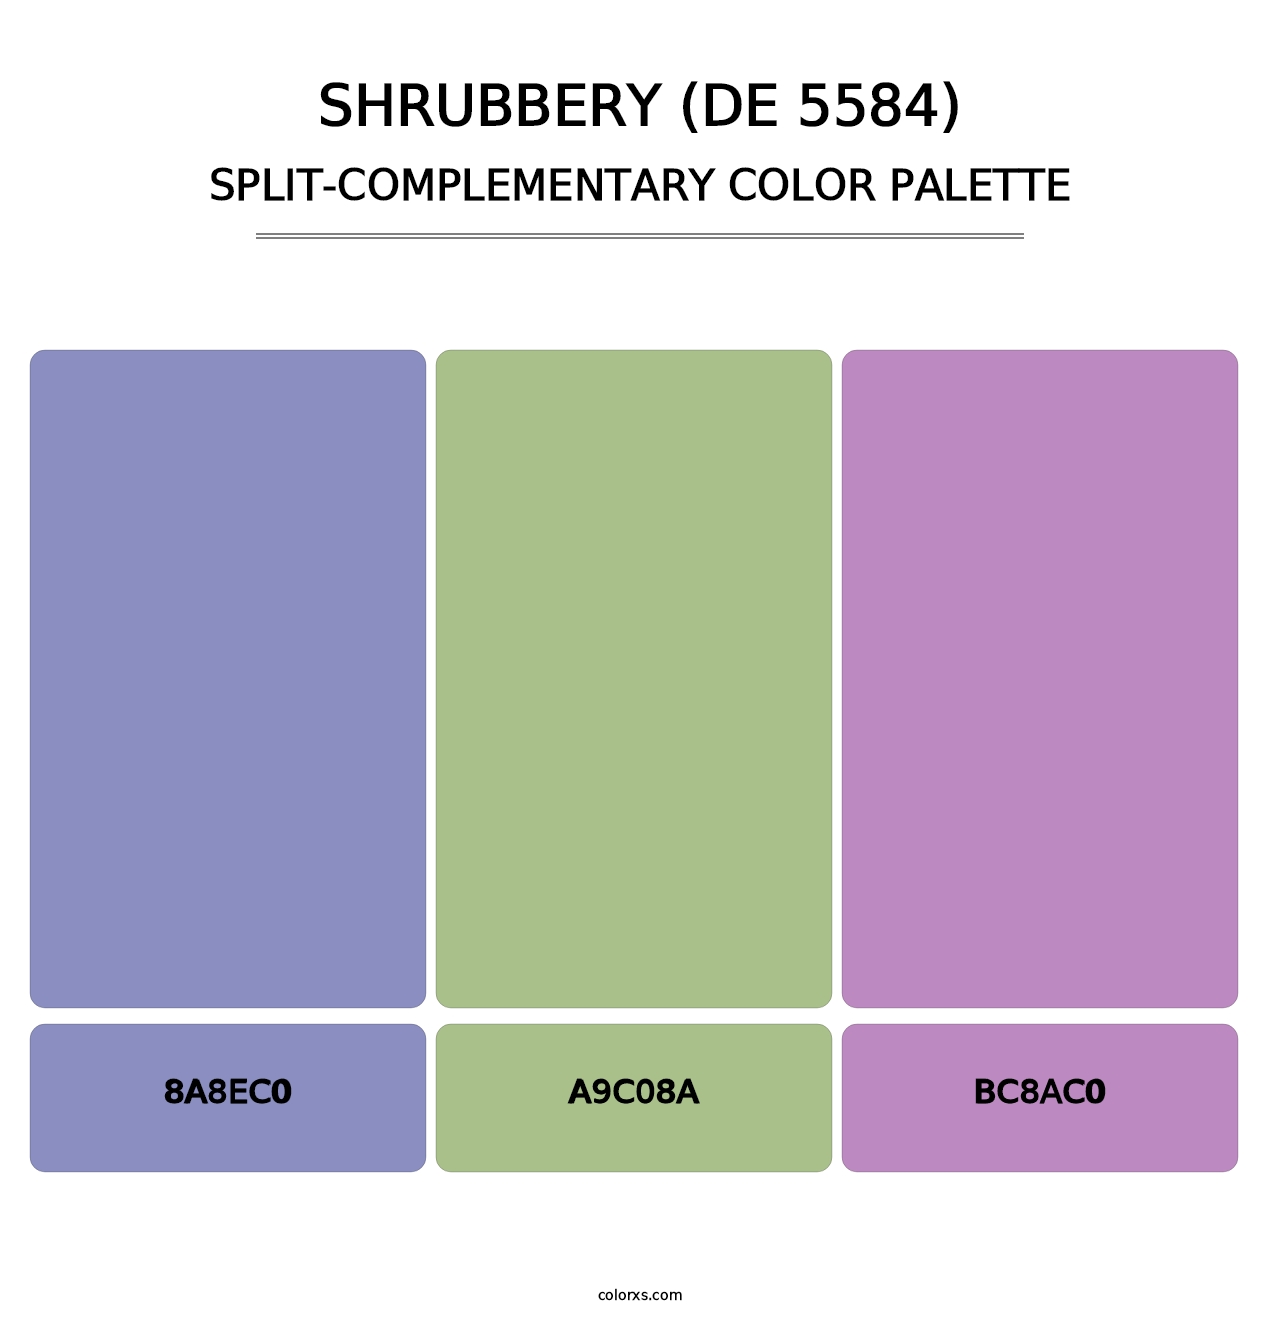 Shrubbery (DE 5584) - Split-Complementary Color Palette